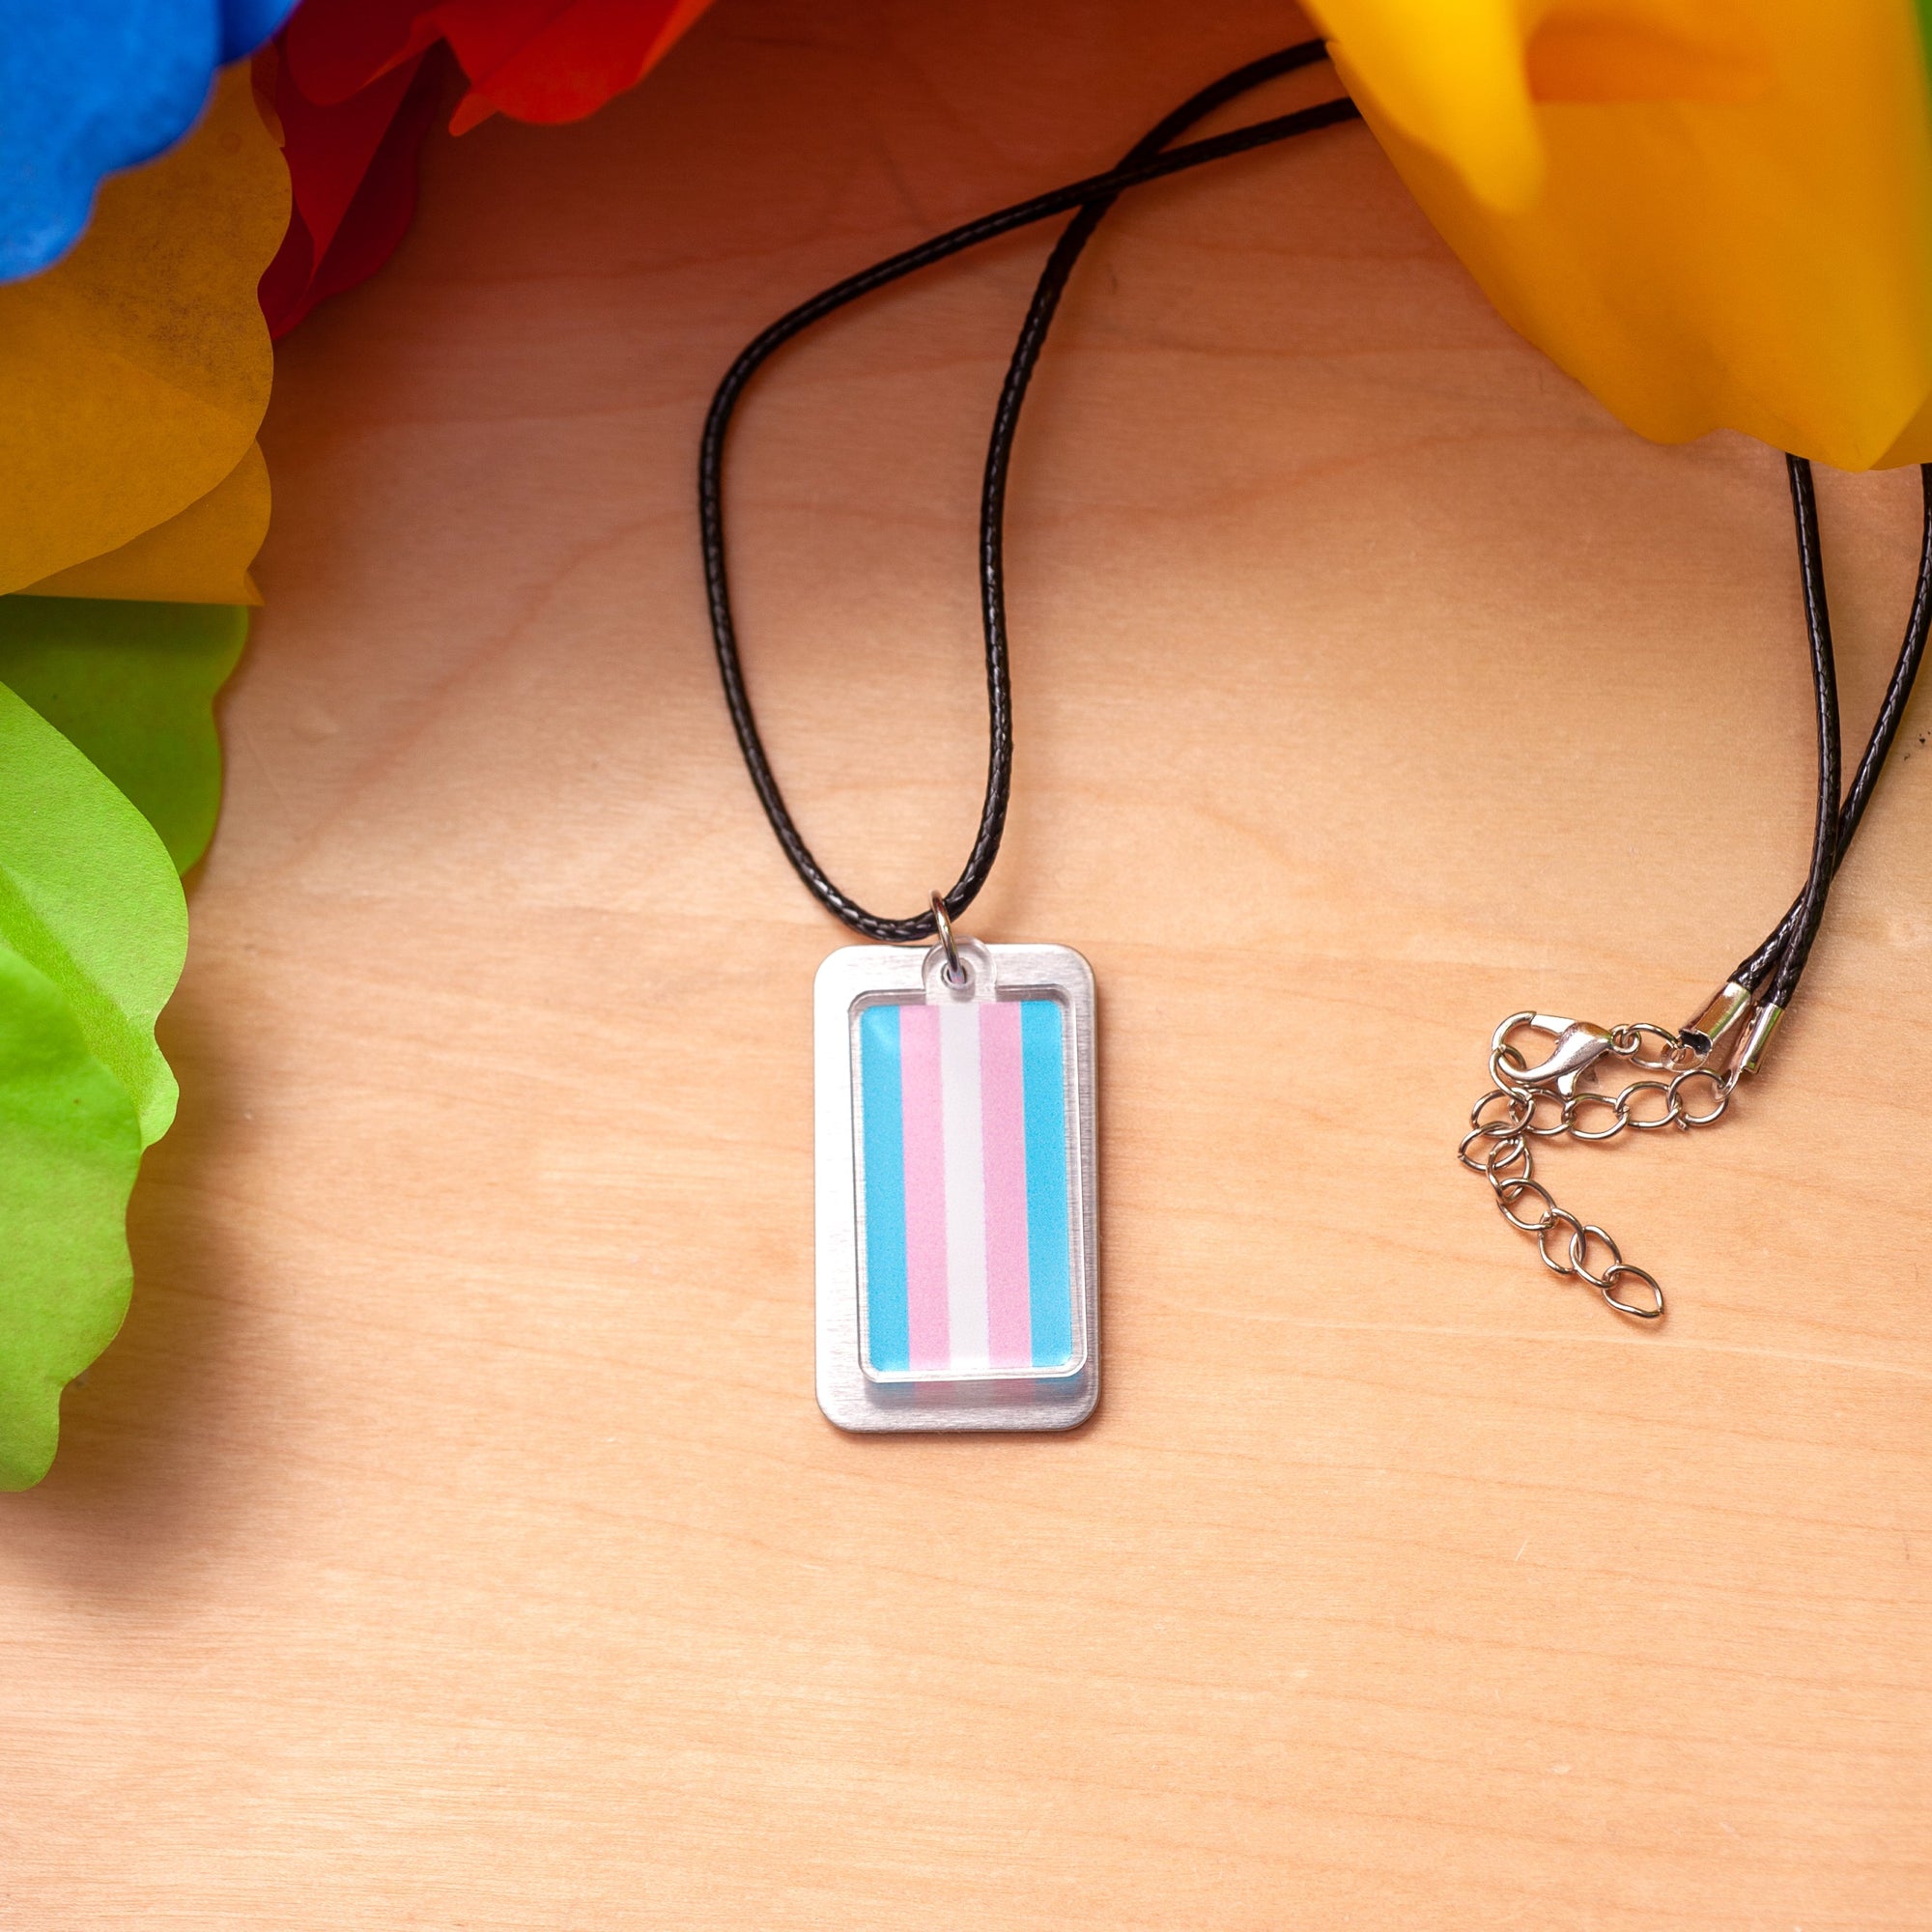 Transgender pride flag necklace